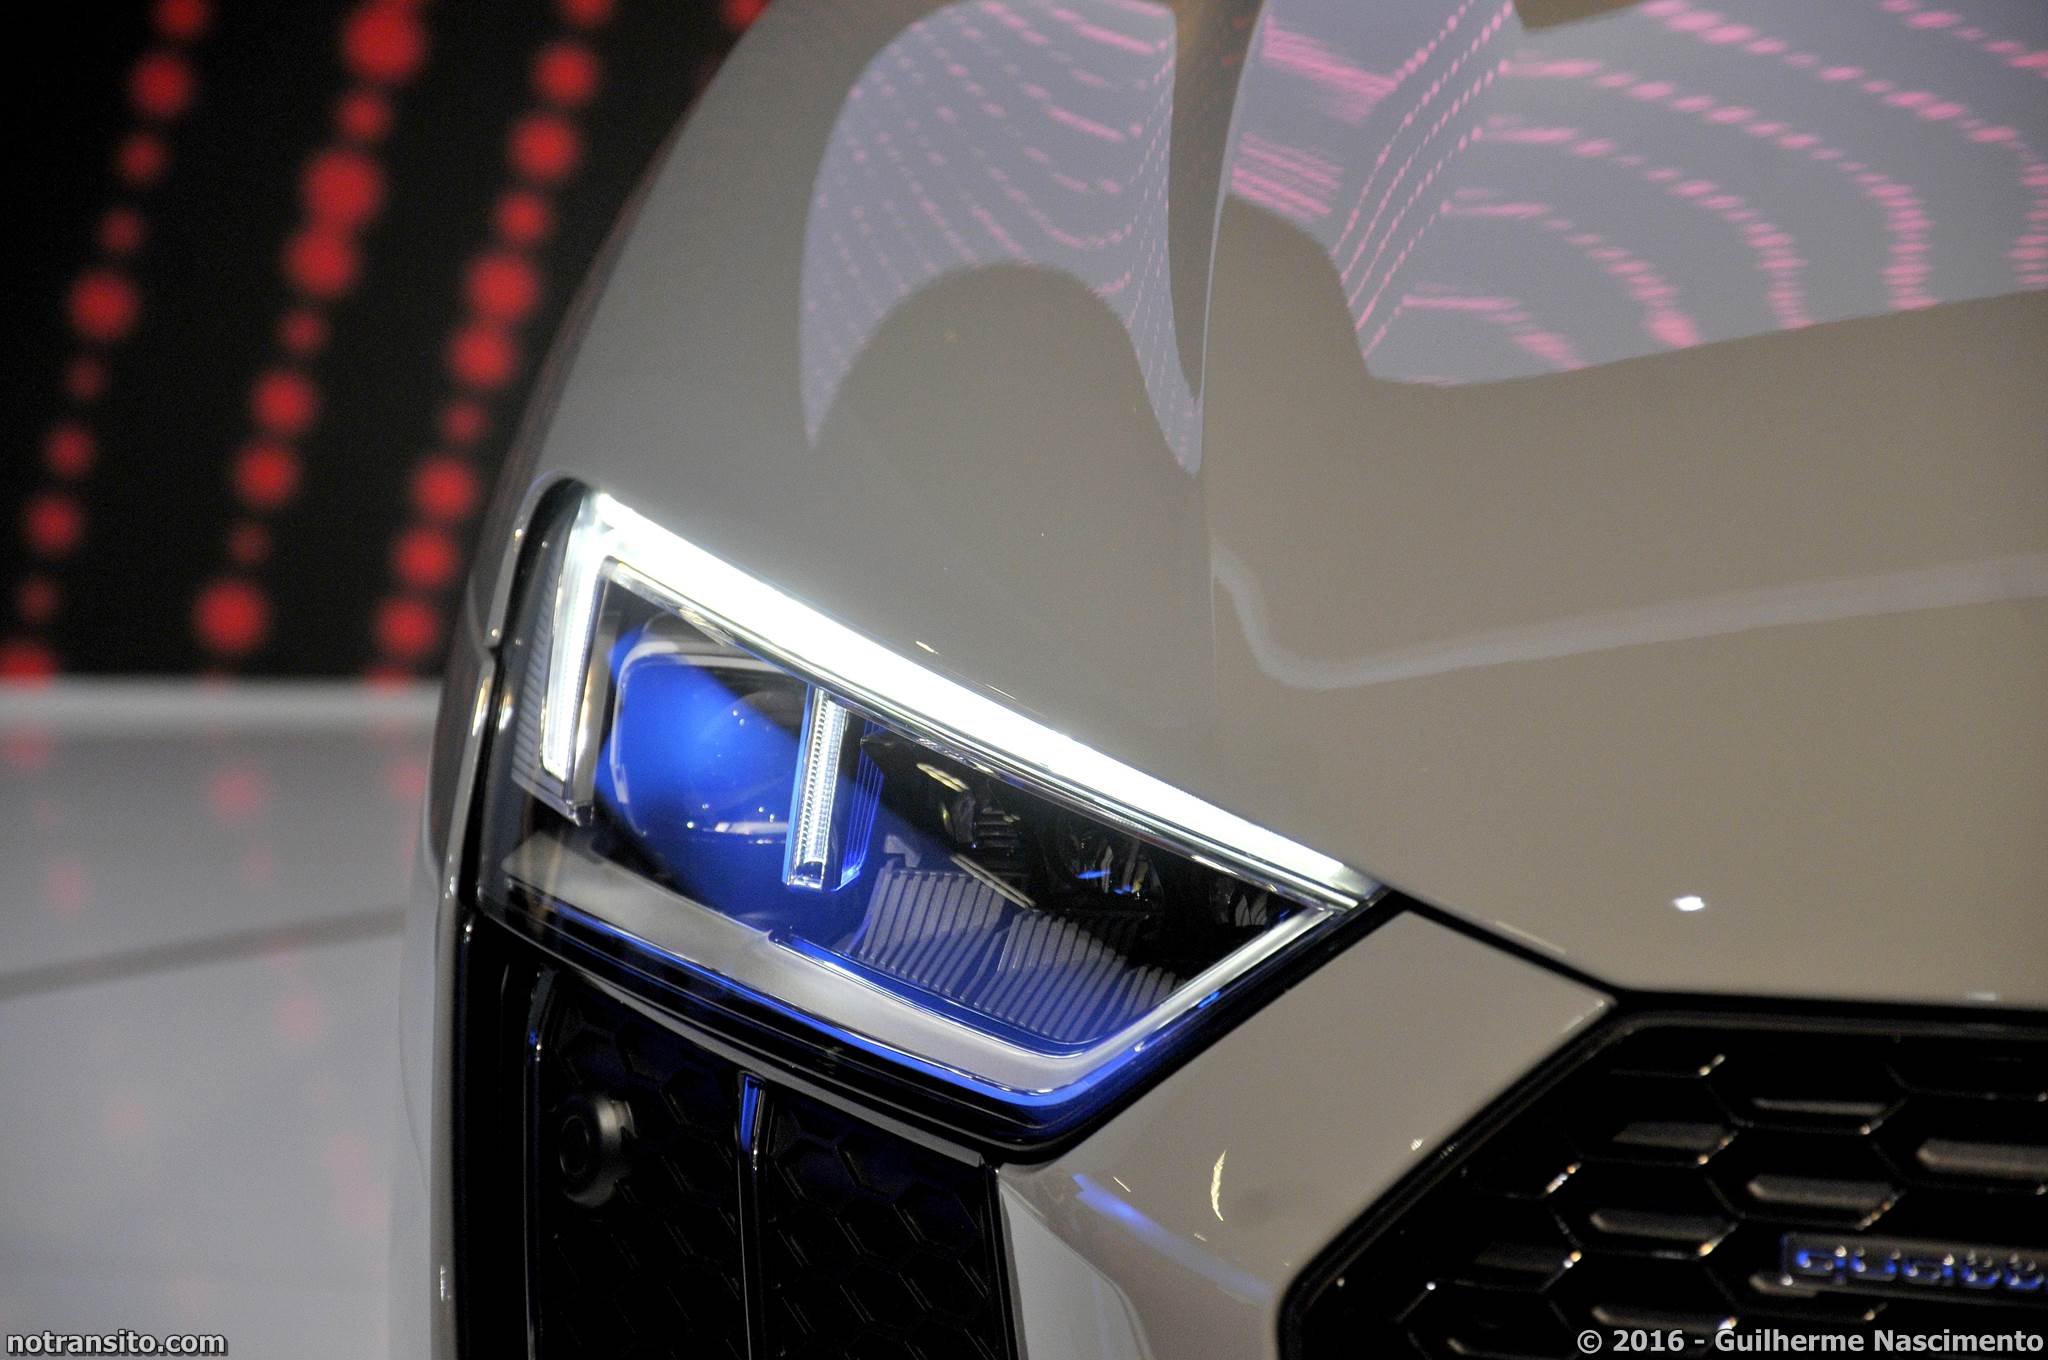 Audi R8 V10 Plus Salão do Automóvel 2016